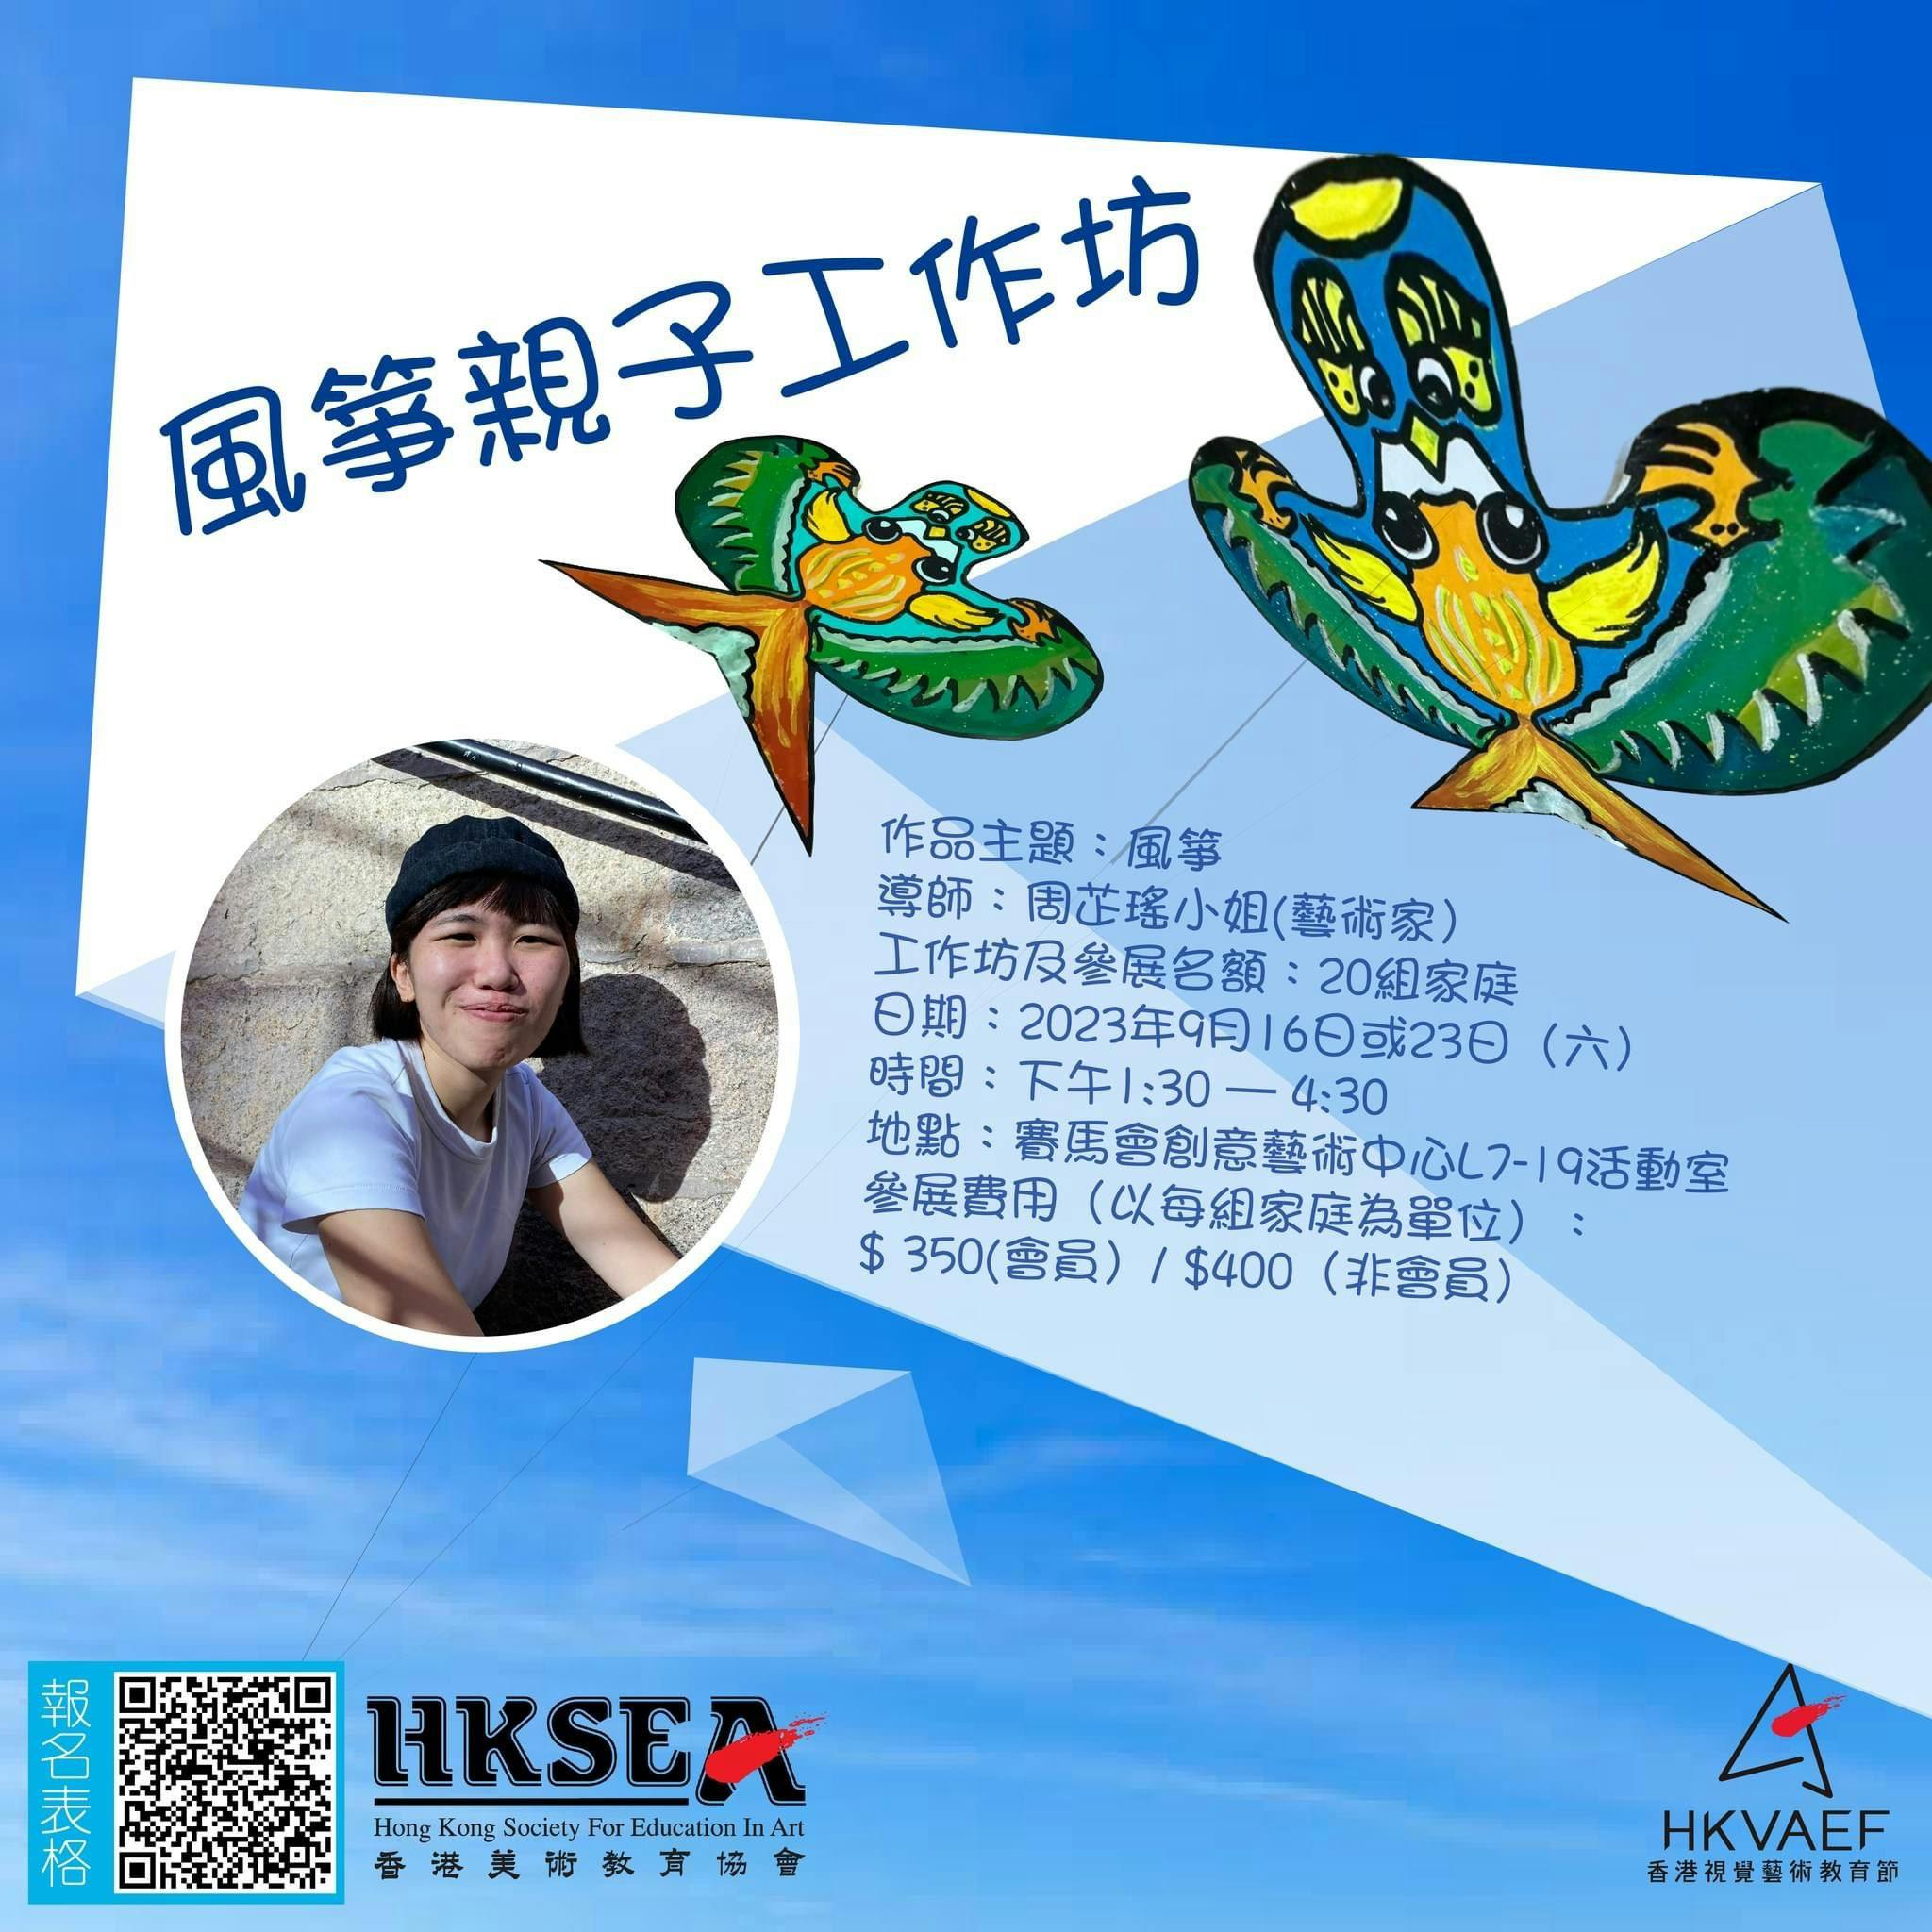 香港視覺藝術教育節2023  「風箏親子工作坊」繽紛有趣 等你加入